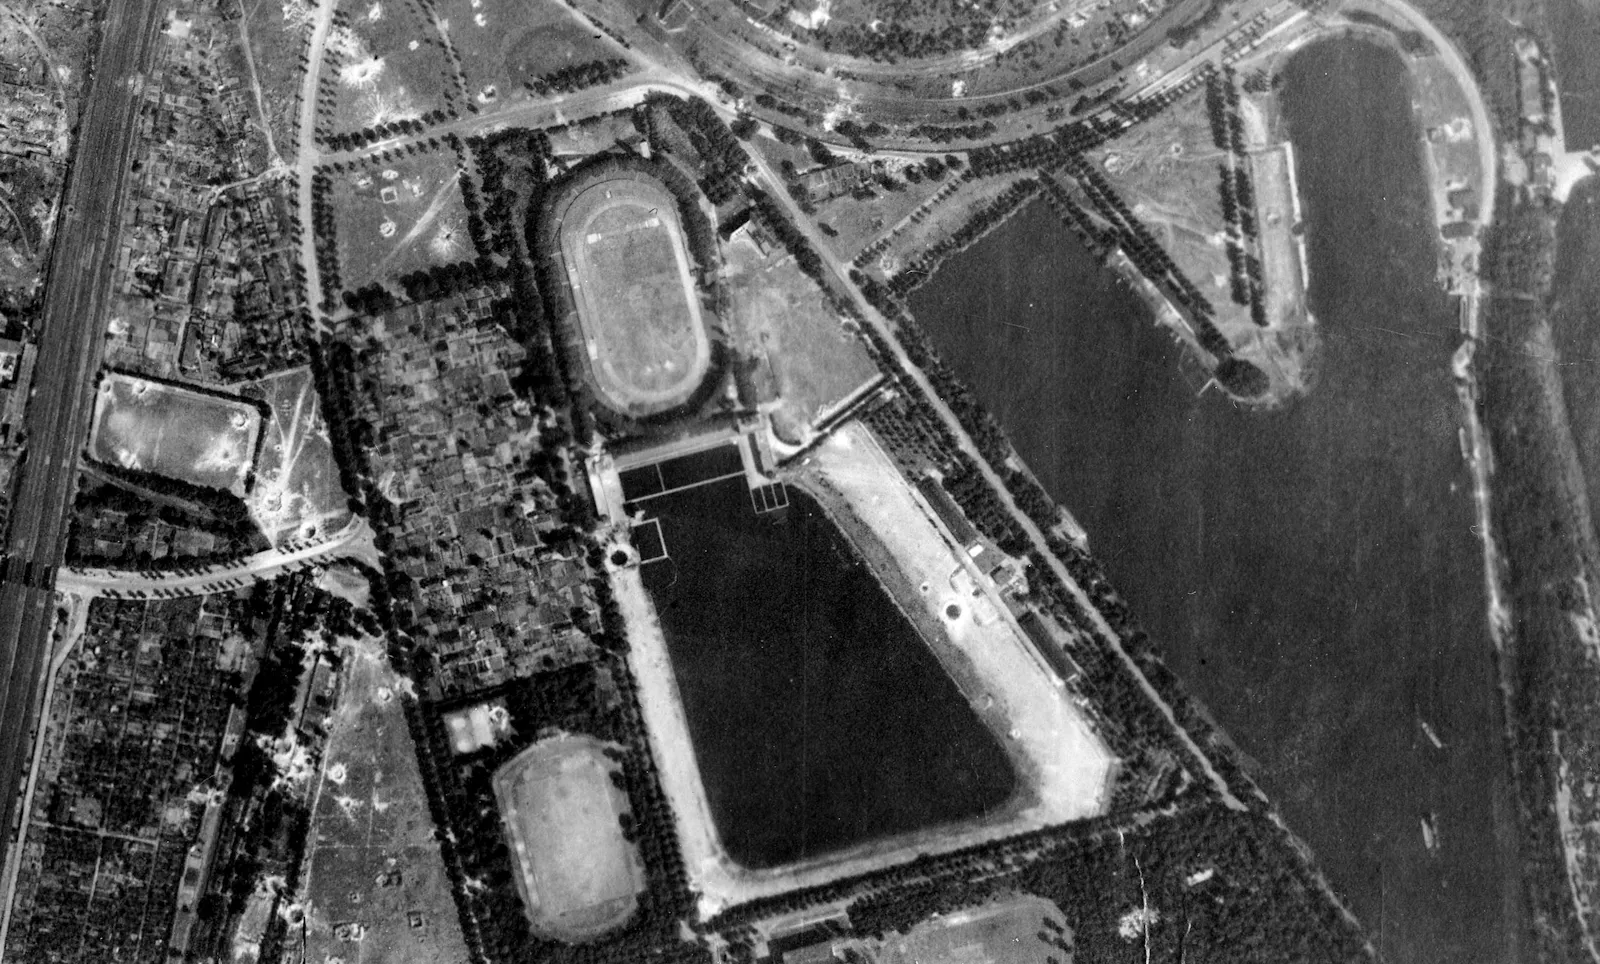 Schwarz-weiß Luftbild von der Sportanlage Wedau in Duisburg, aus den 1940er Jahren. Zu sehen sind das ovale alte Wedaustadion, ein Fußballplatz, ein Schwimmbad und die Regattabahn.